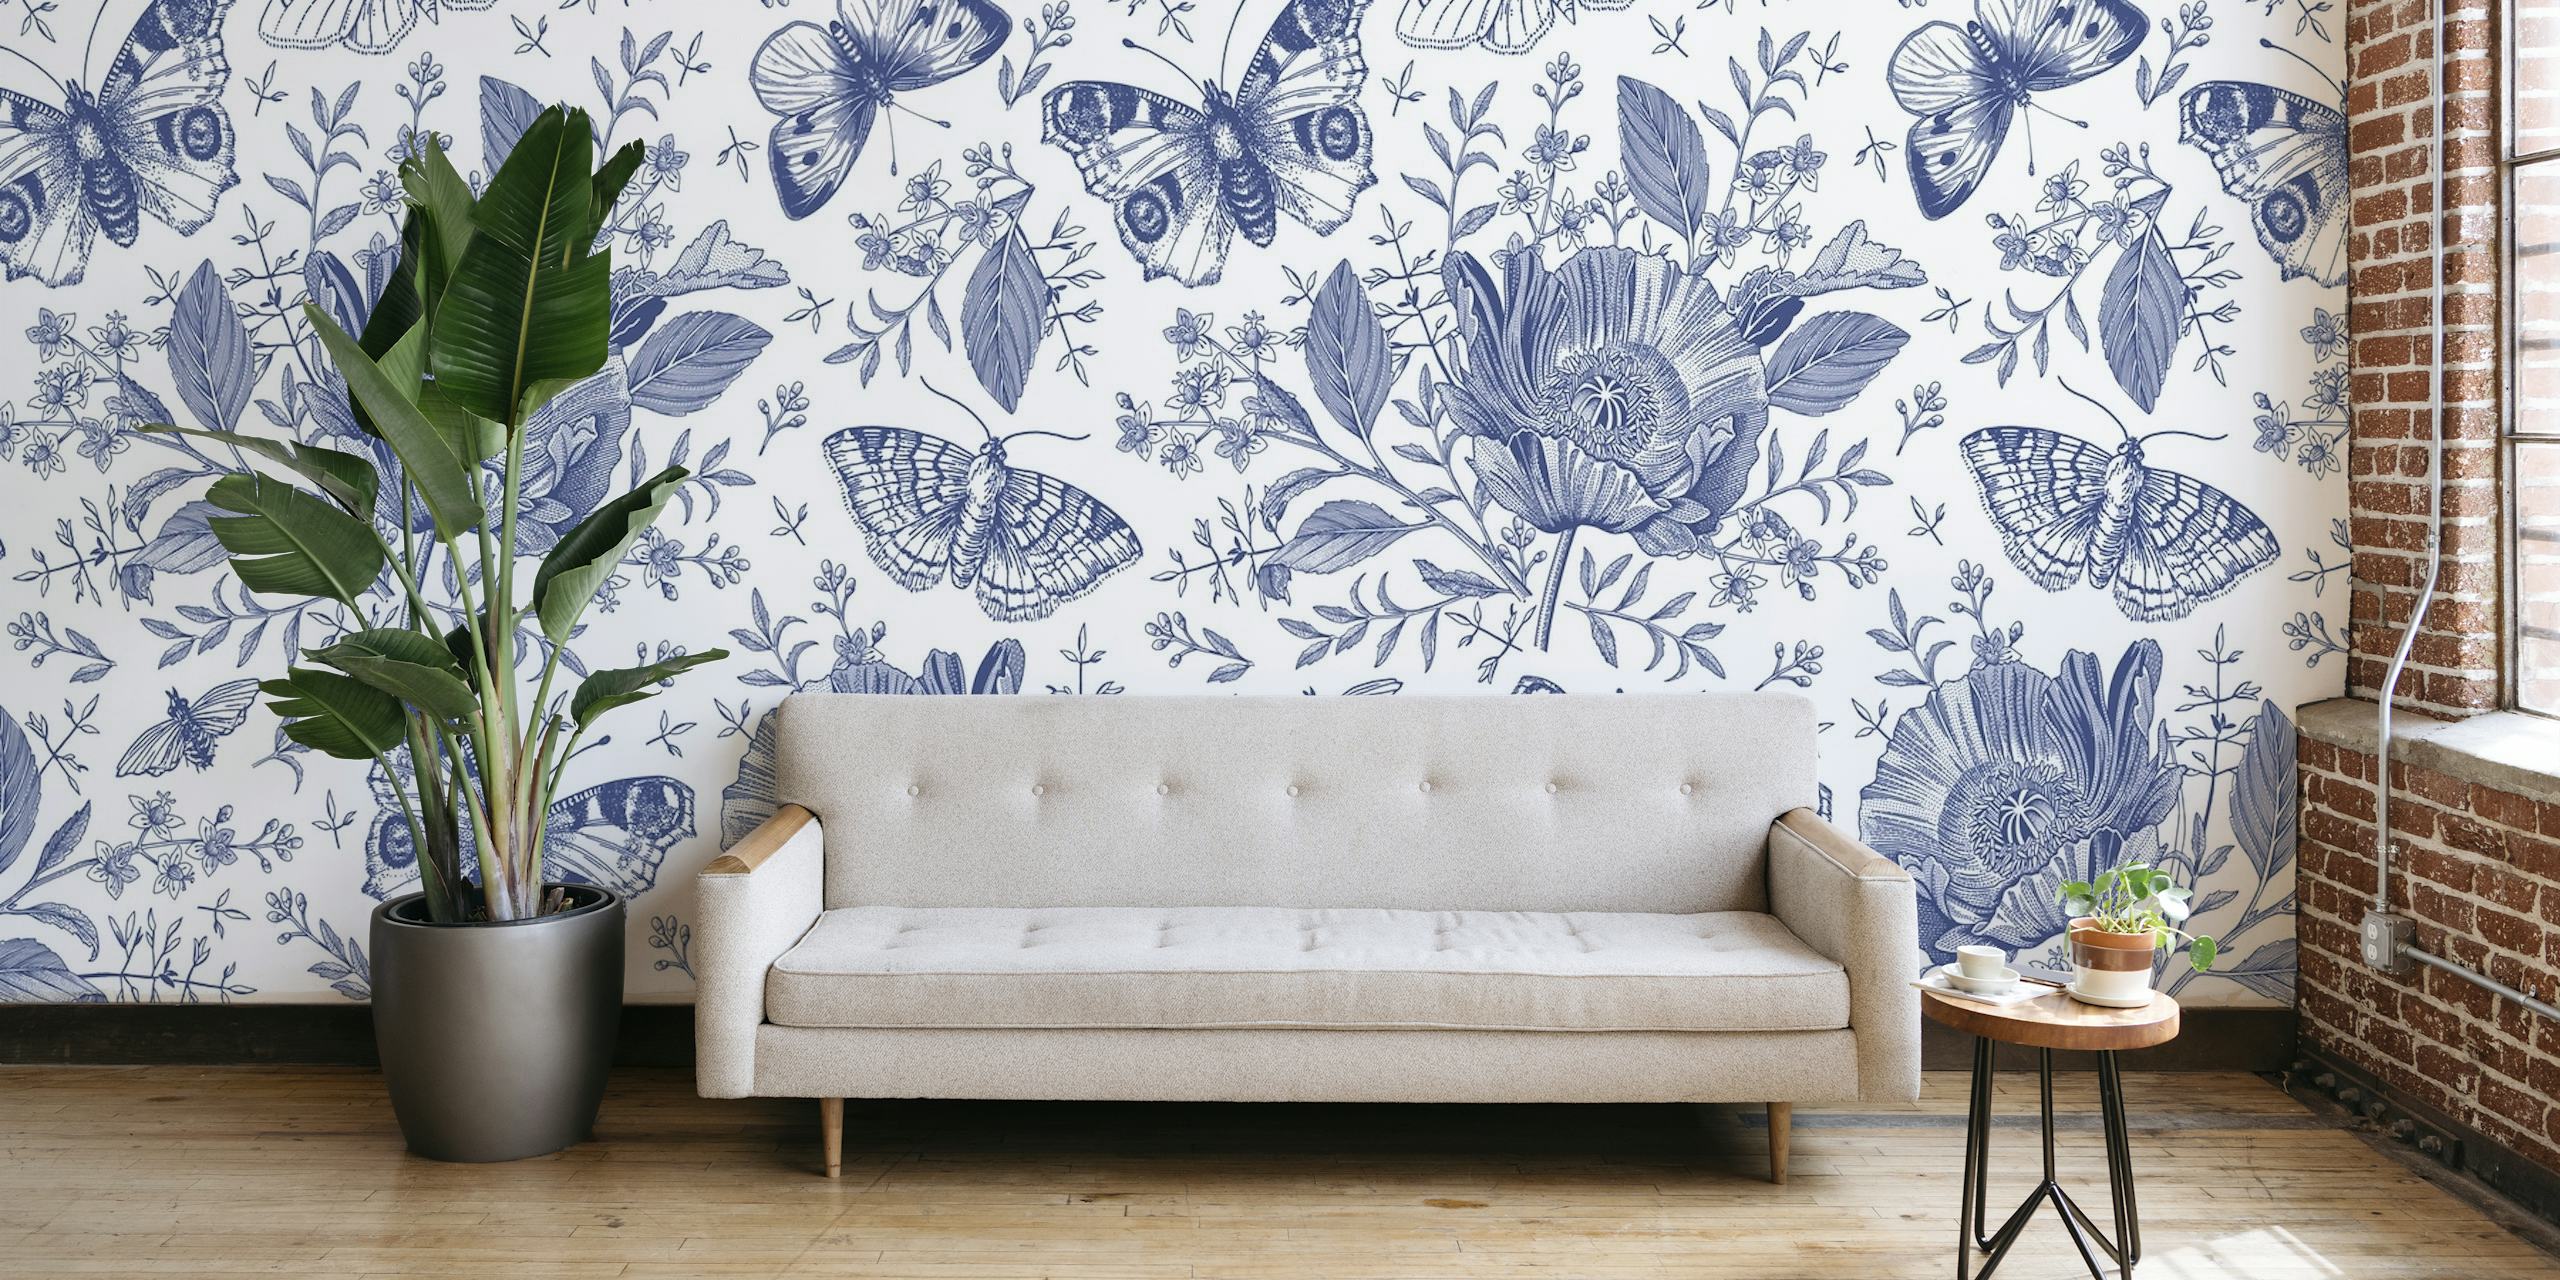 Fotomural vinílico de parede com padrão botânico e borboleta azul de happywall.com